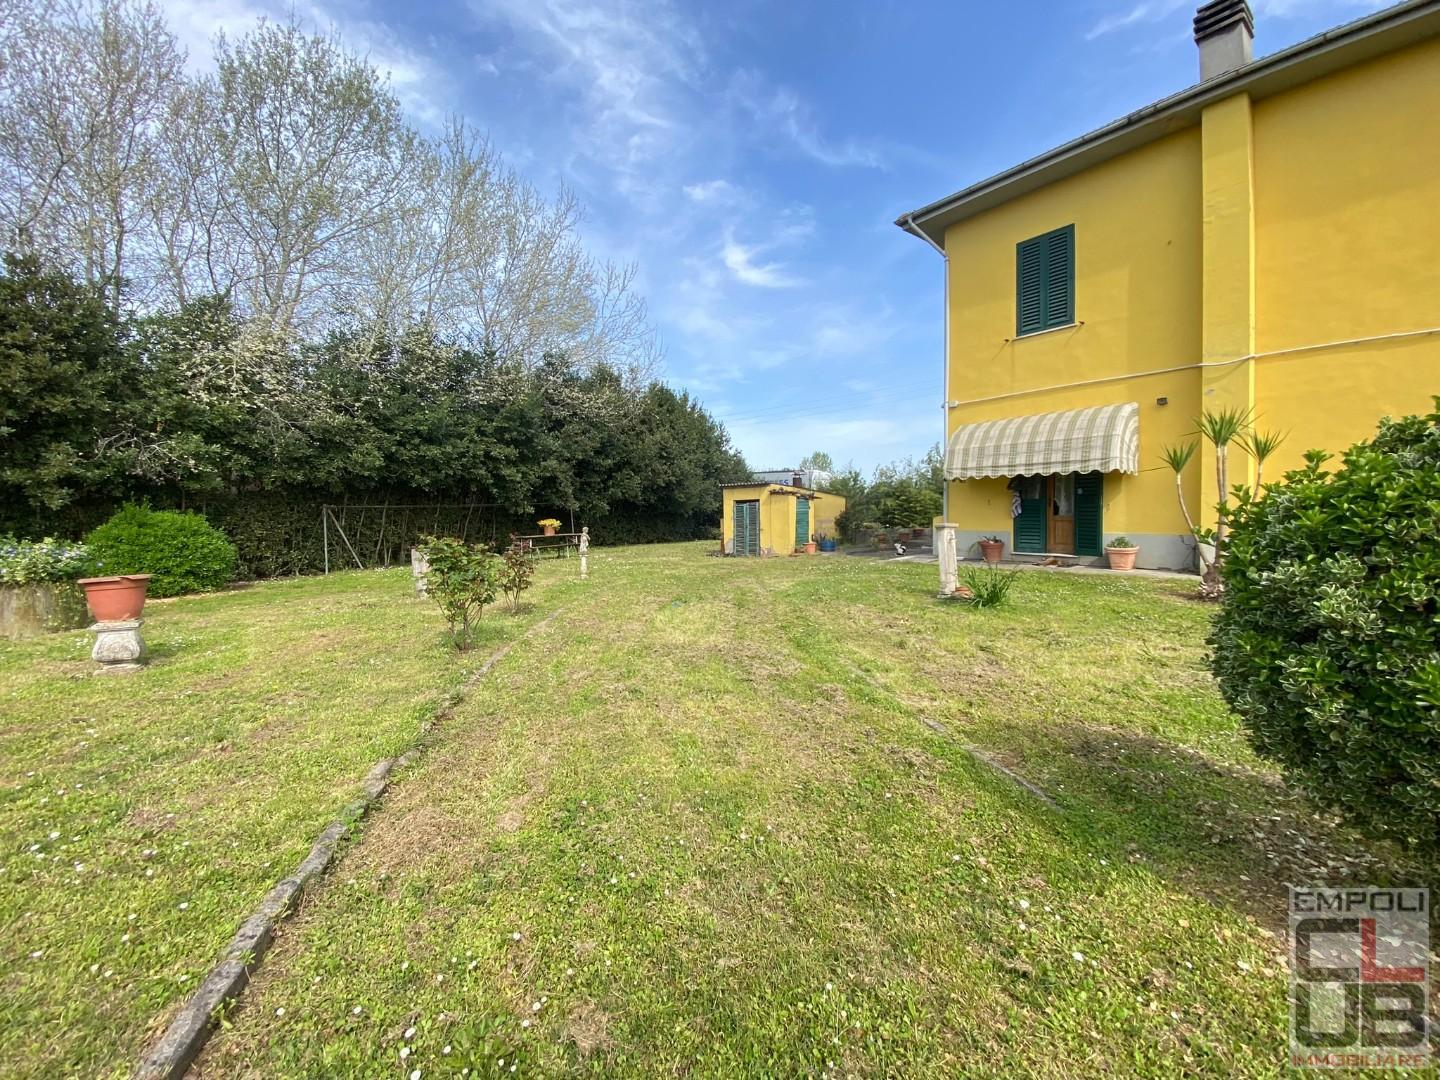 Villa for sale in San Miniato (PI)